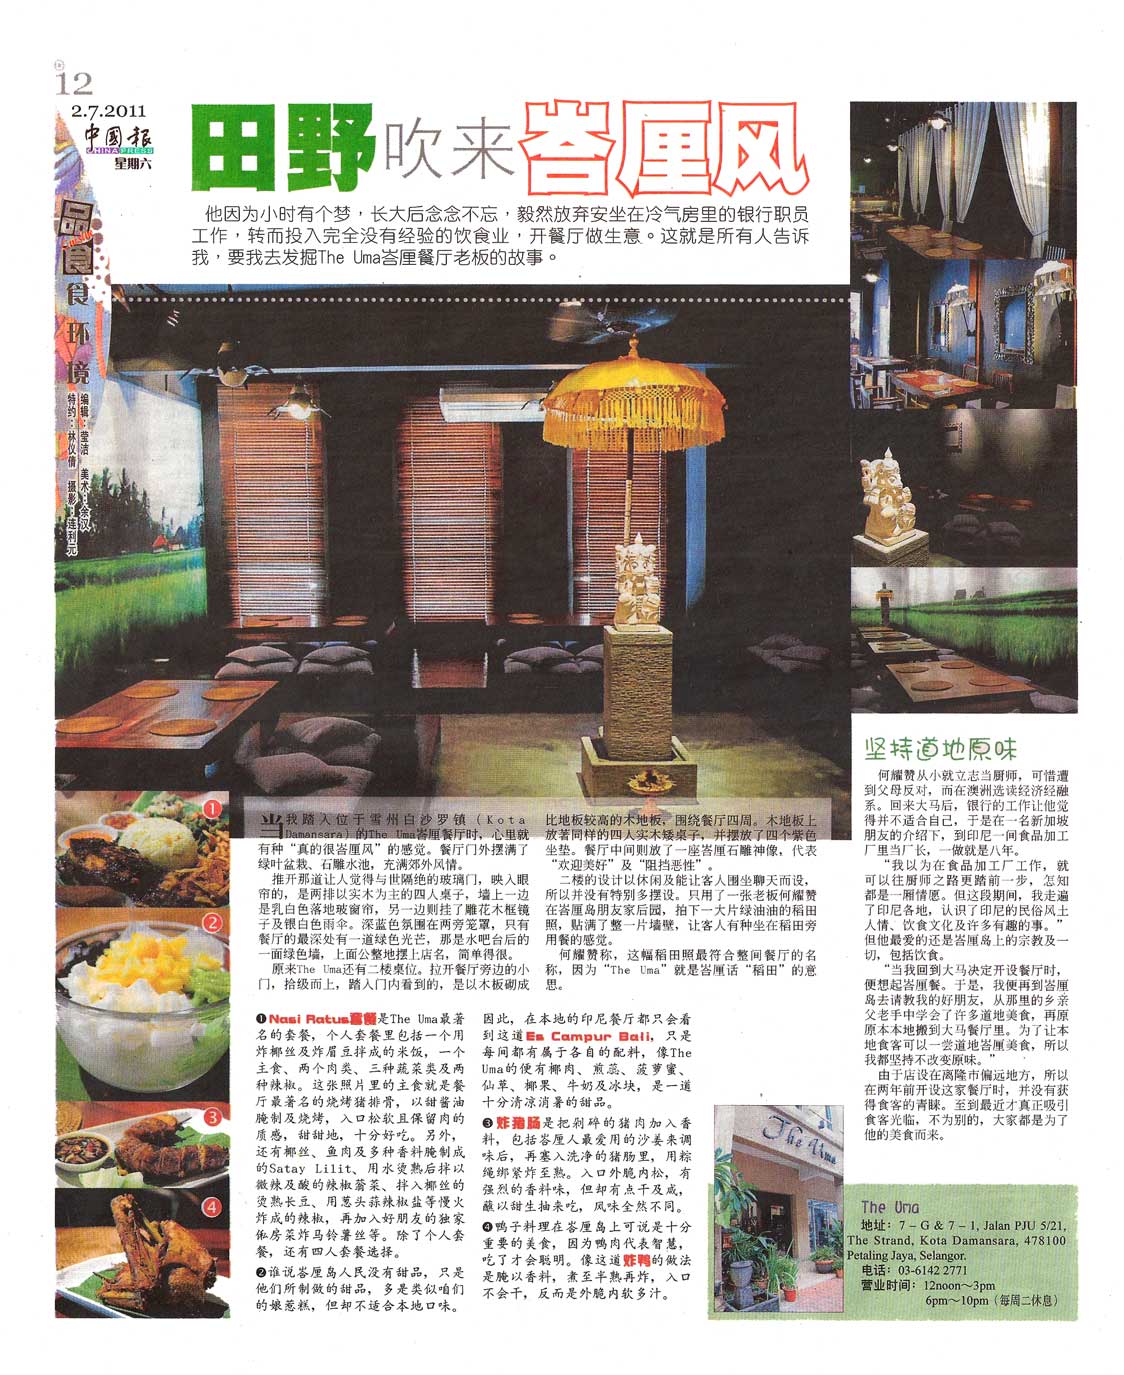 the uma bali restaurant newspaper review chinapress